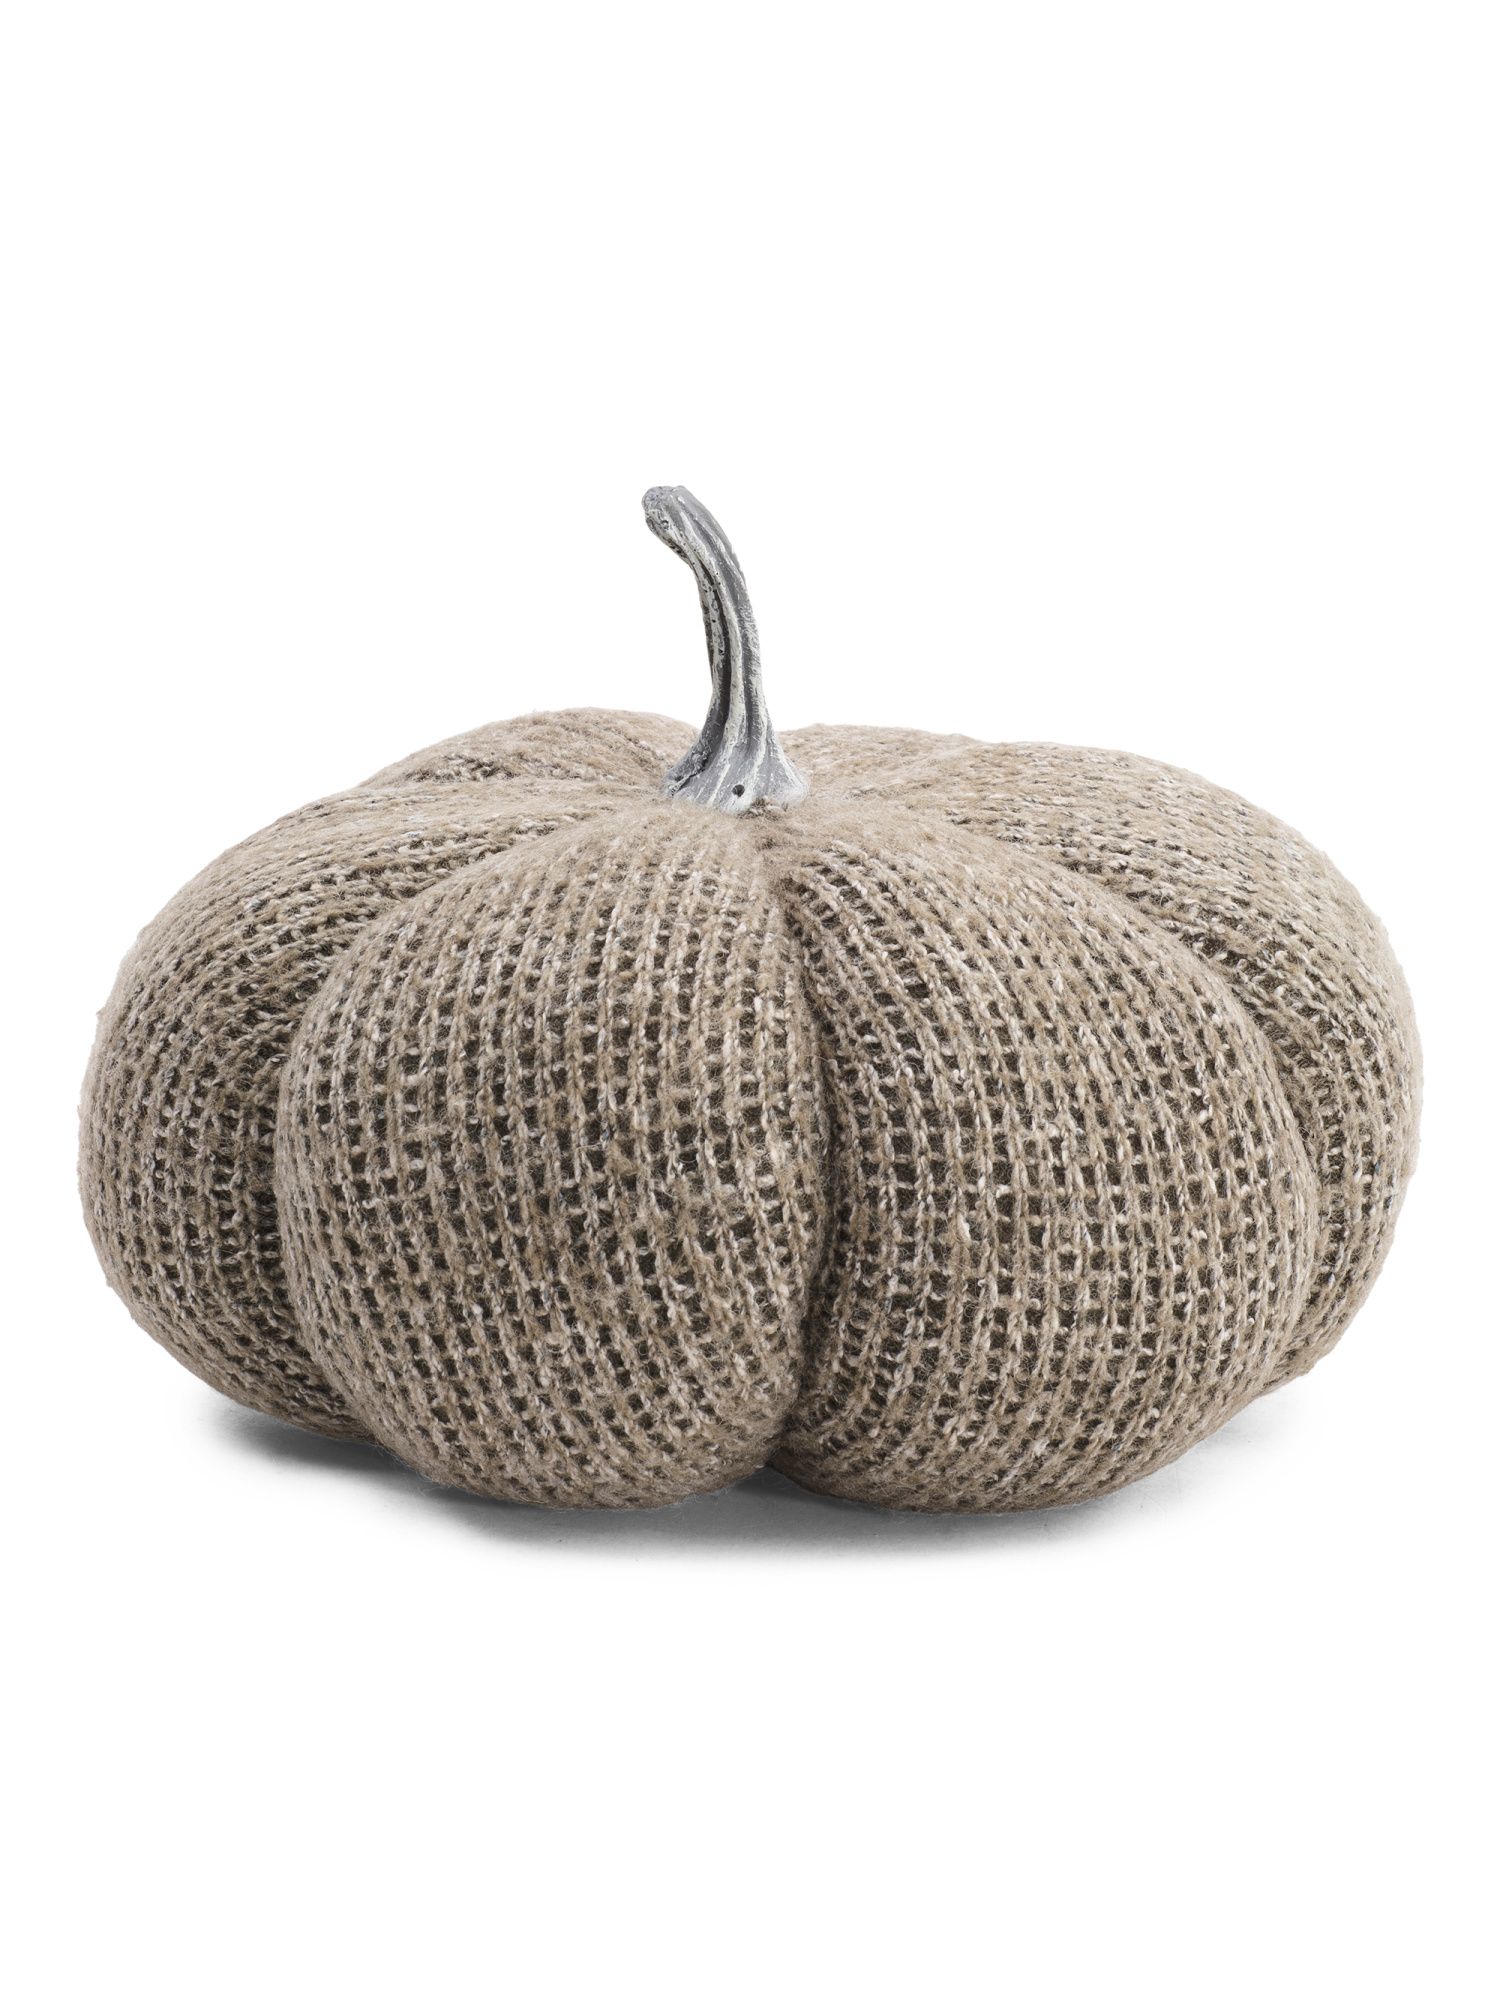 8in Knit Pumpkin | Pillows & Decor | Marshalls | Marshalls